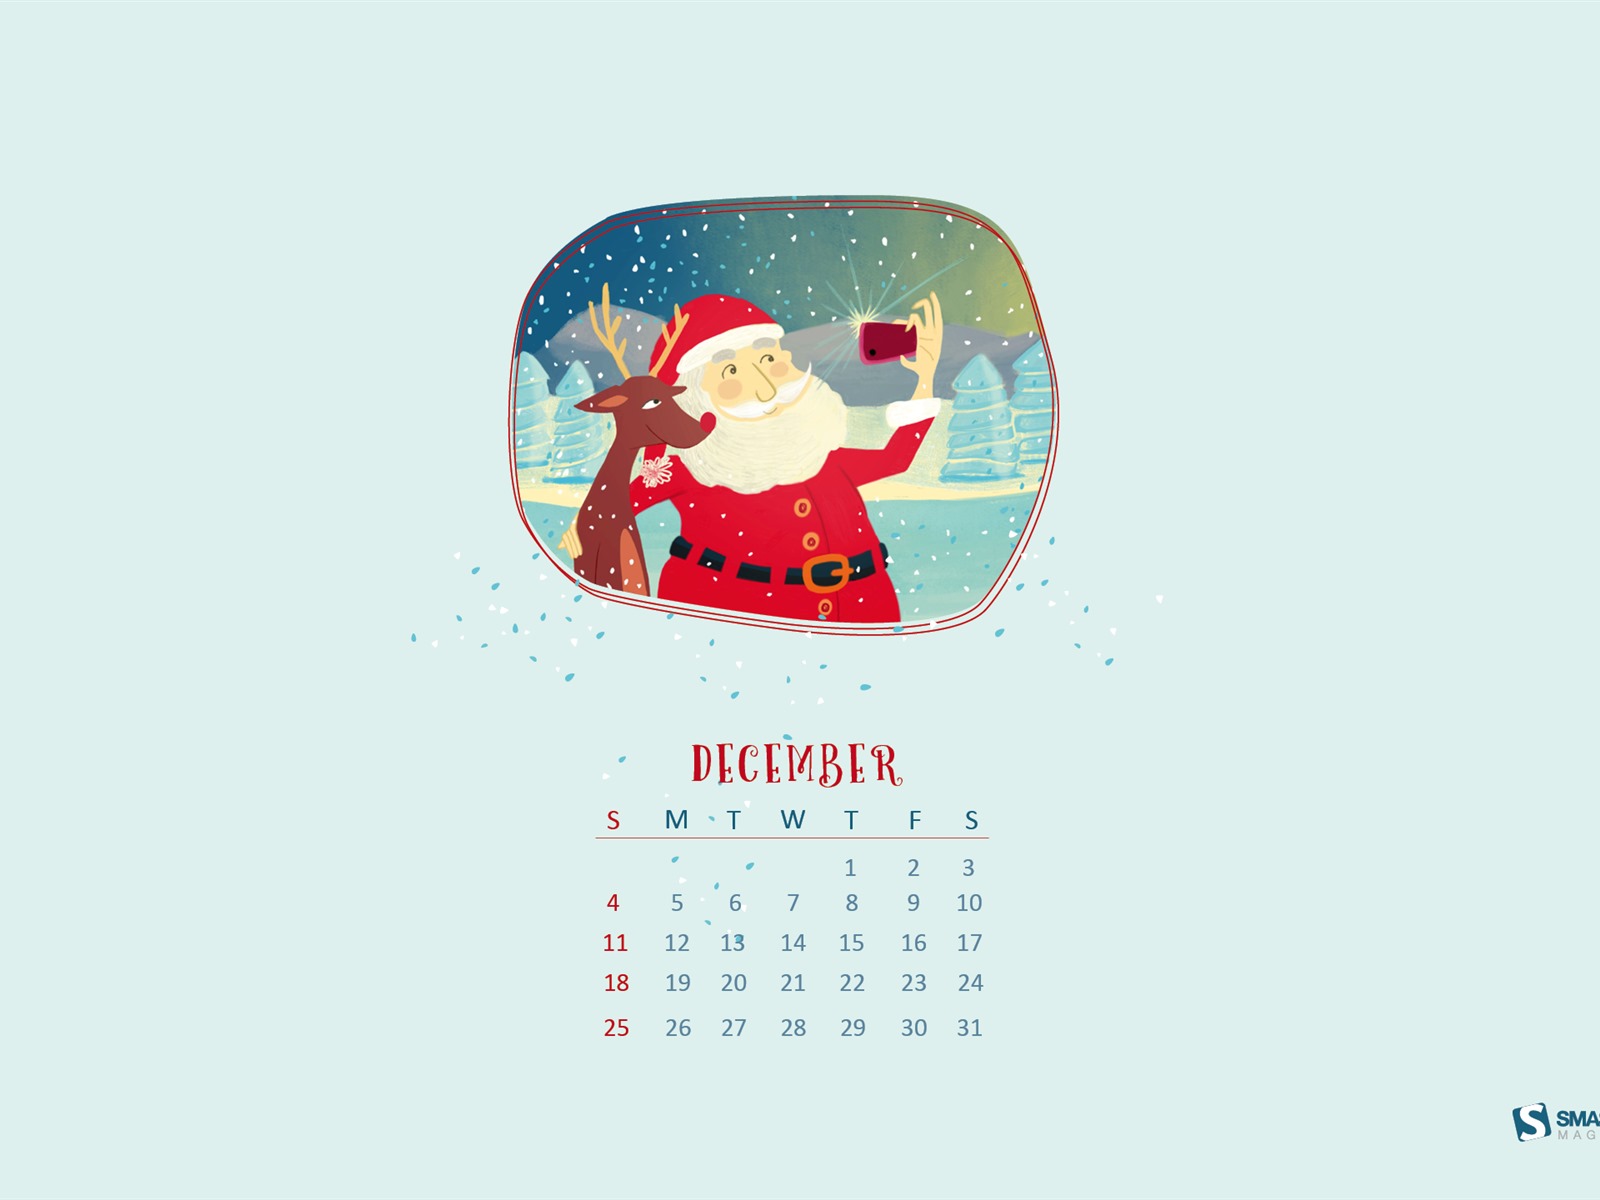 December 2016 Christmas theme calendar wallpaper (1) #15 - 1600x1200